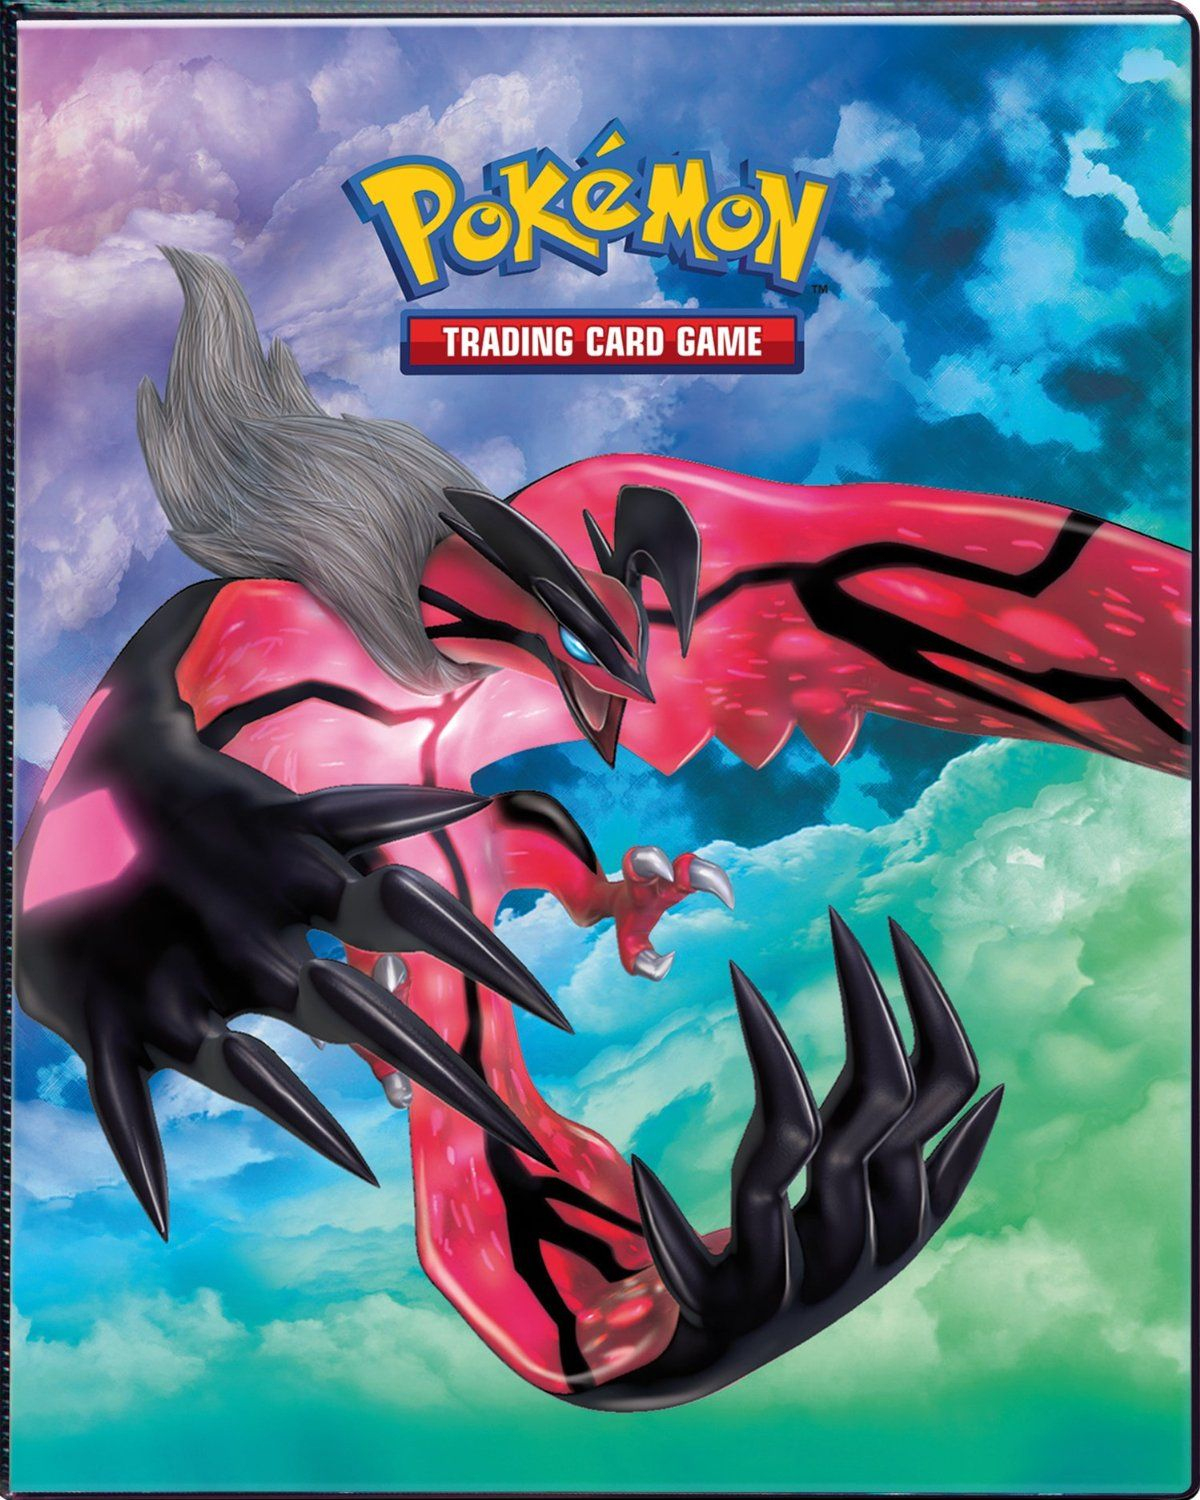 Pokemon Binder Cover | Pokemon | Pinterest | Pokémon And Classeur - Pokemon Binder Cover Printable Free